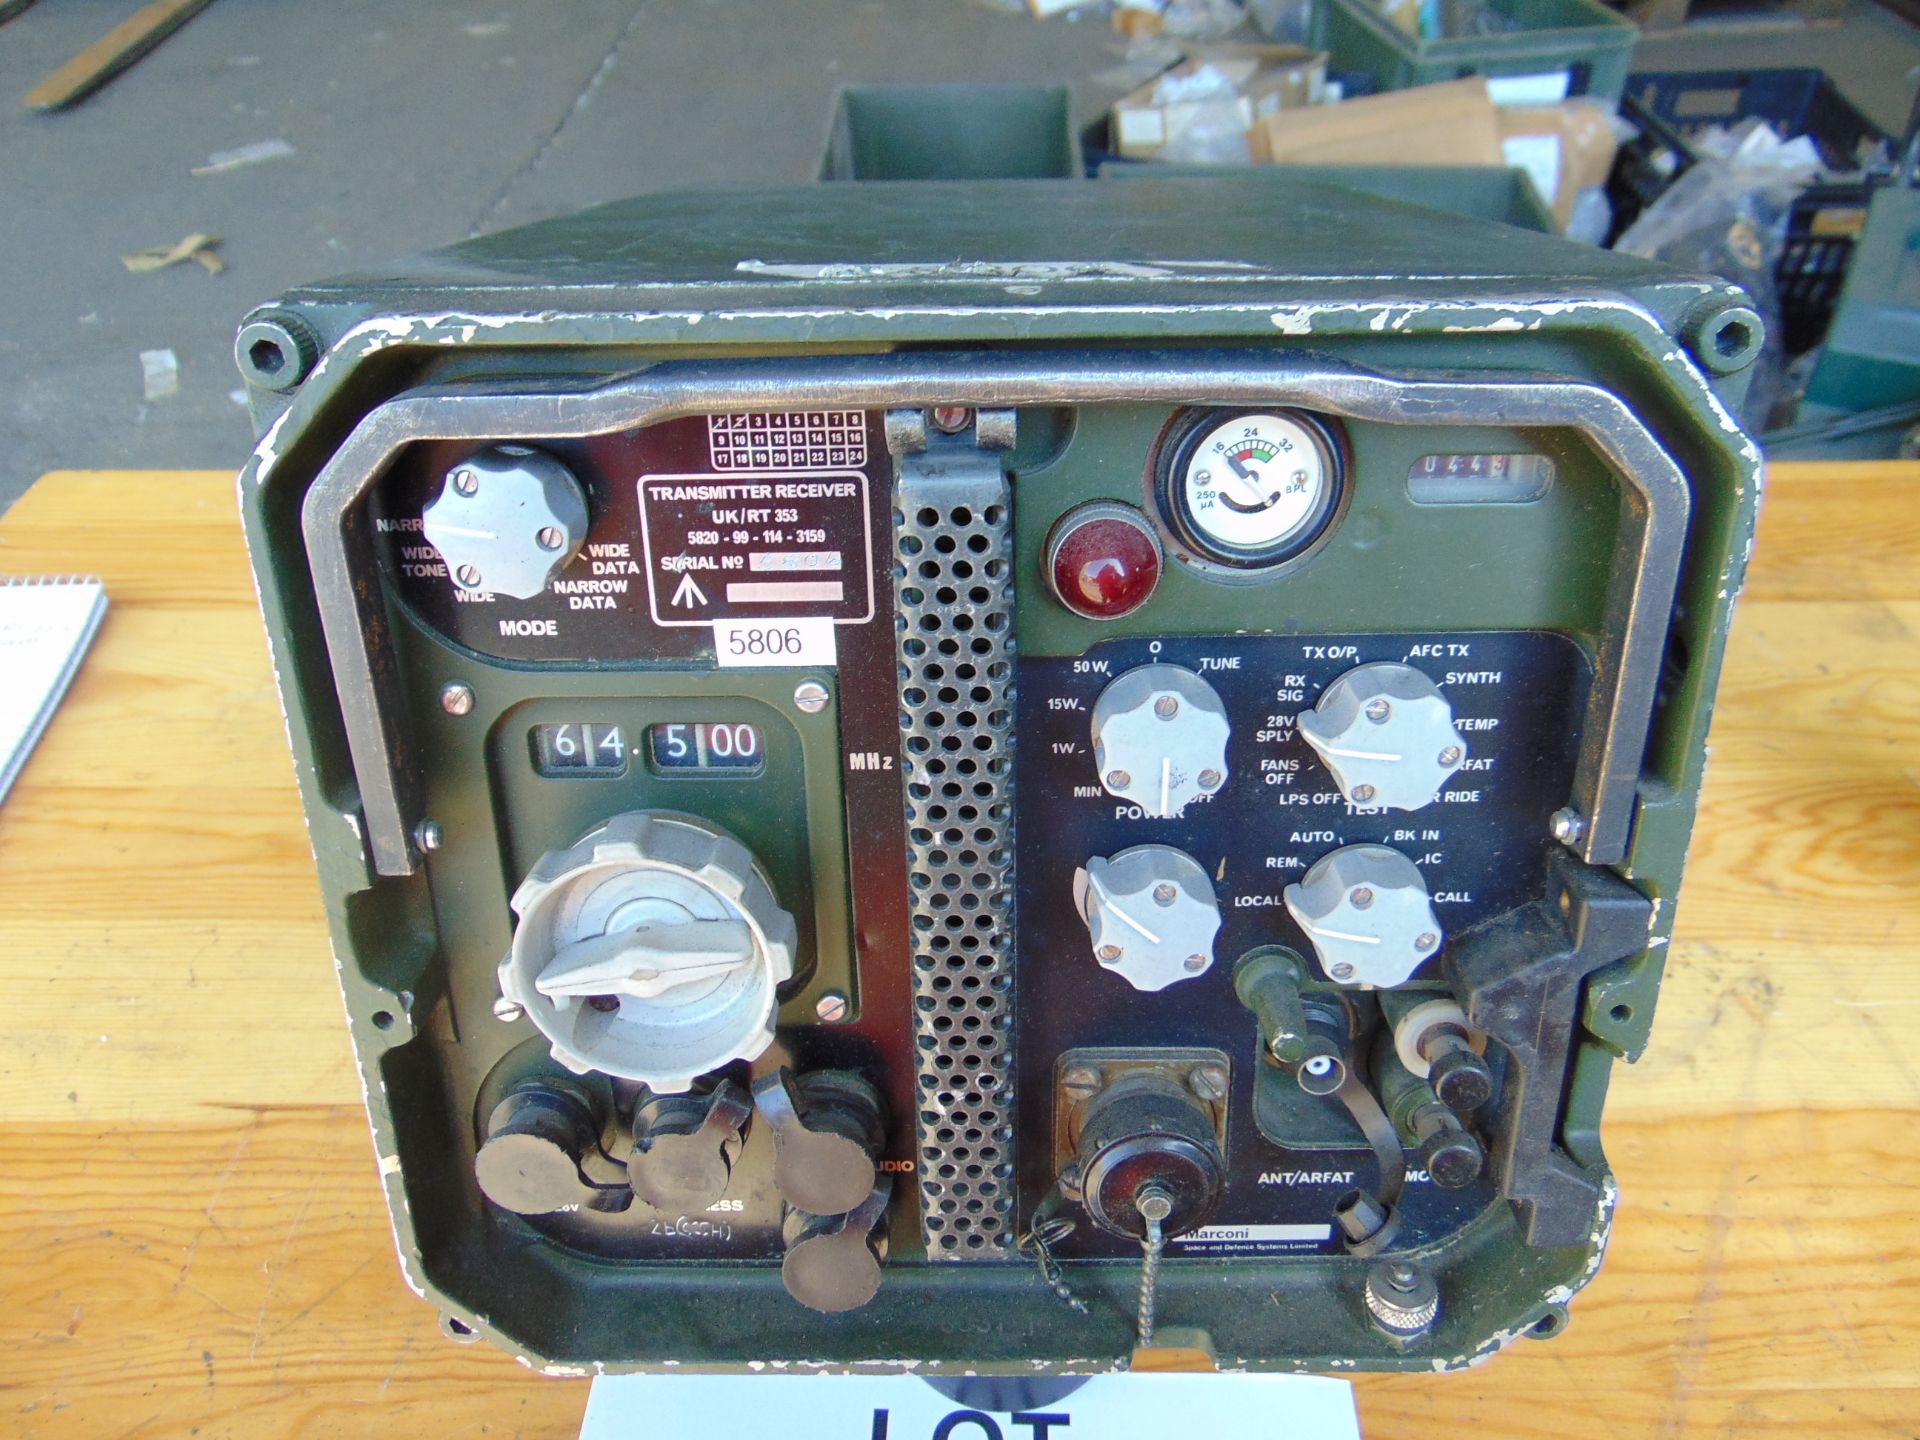 Clansman UK/RT 353 VHF Transmitter Receiver - Image 2 of 4